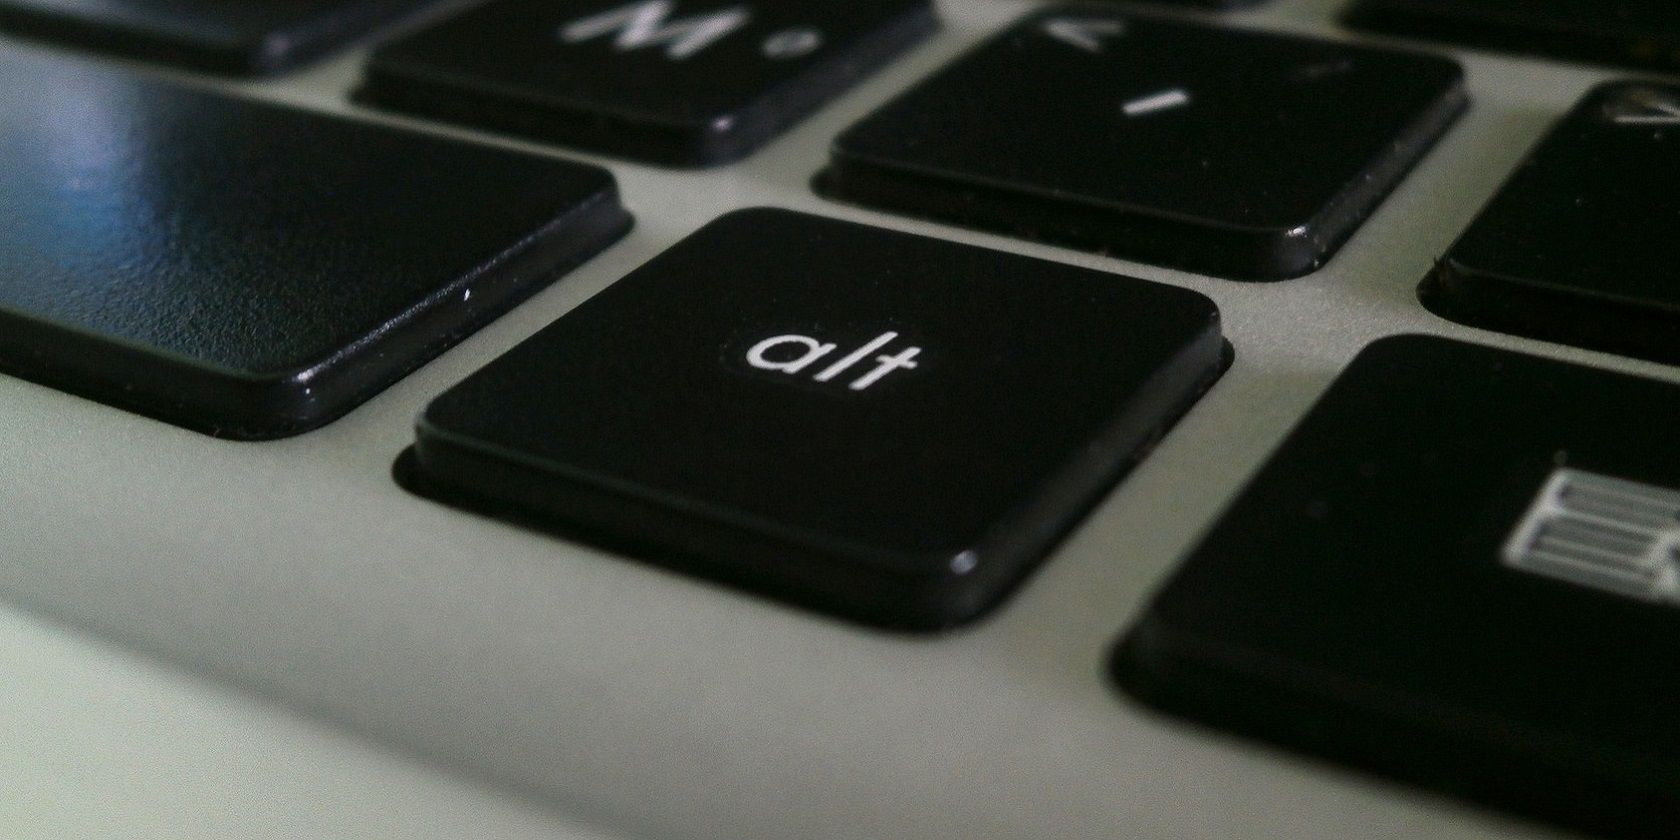 The Alt keyboard key 